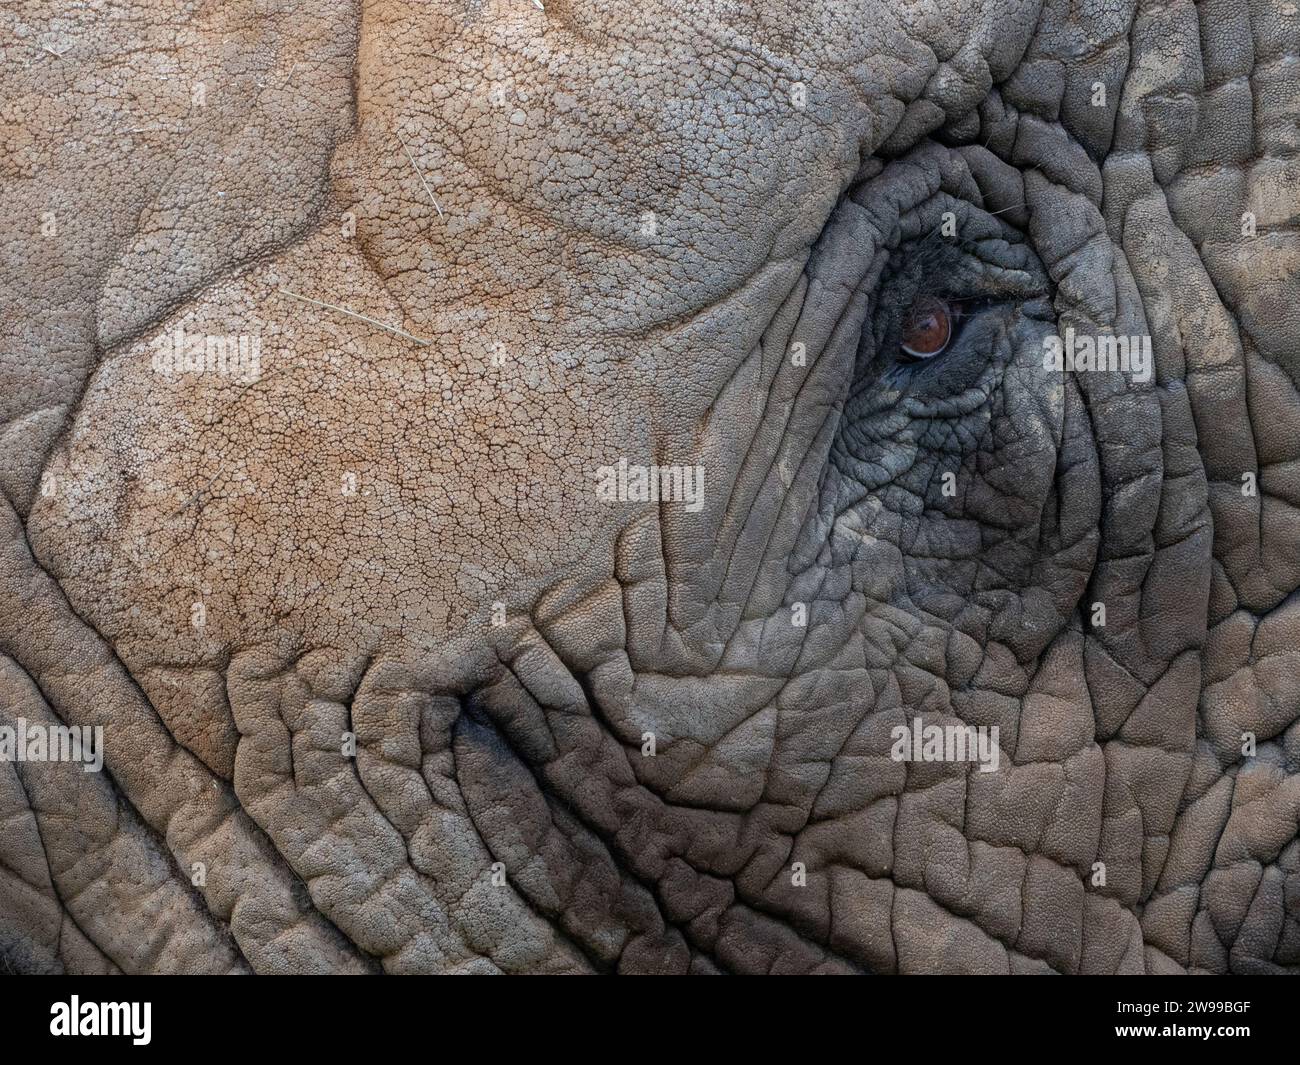 Un primo piano dell'occhio di un elefante africano con la pelle rugosa Foto Stock